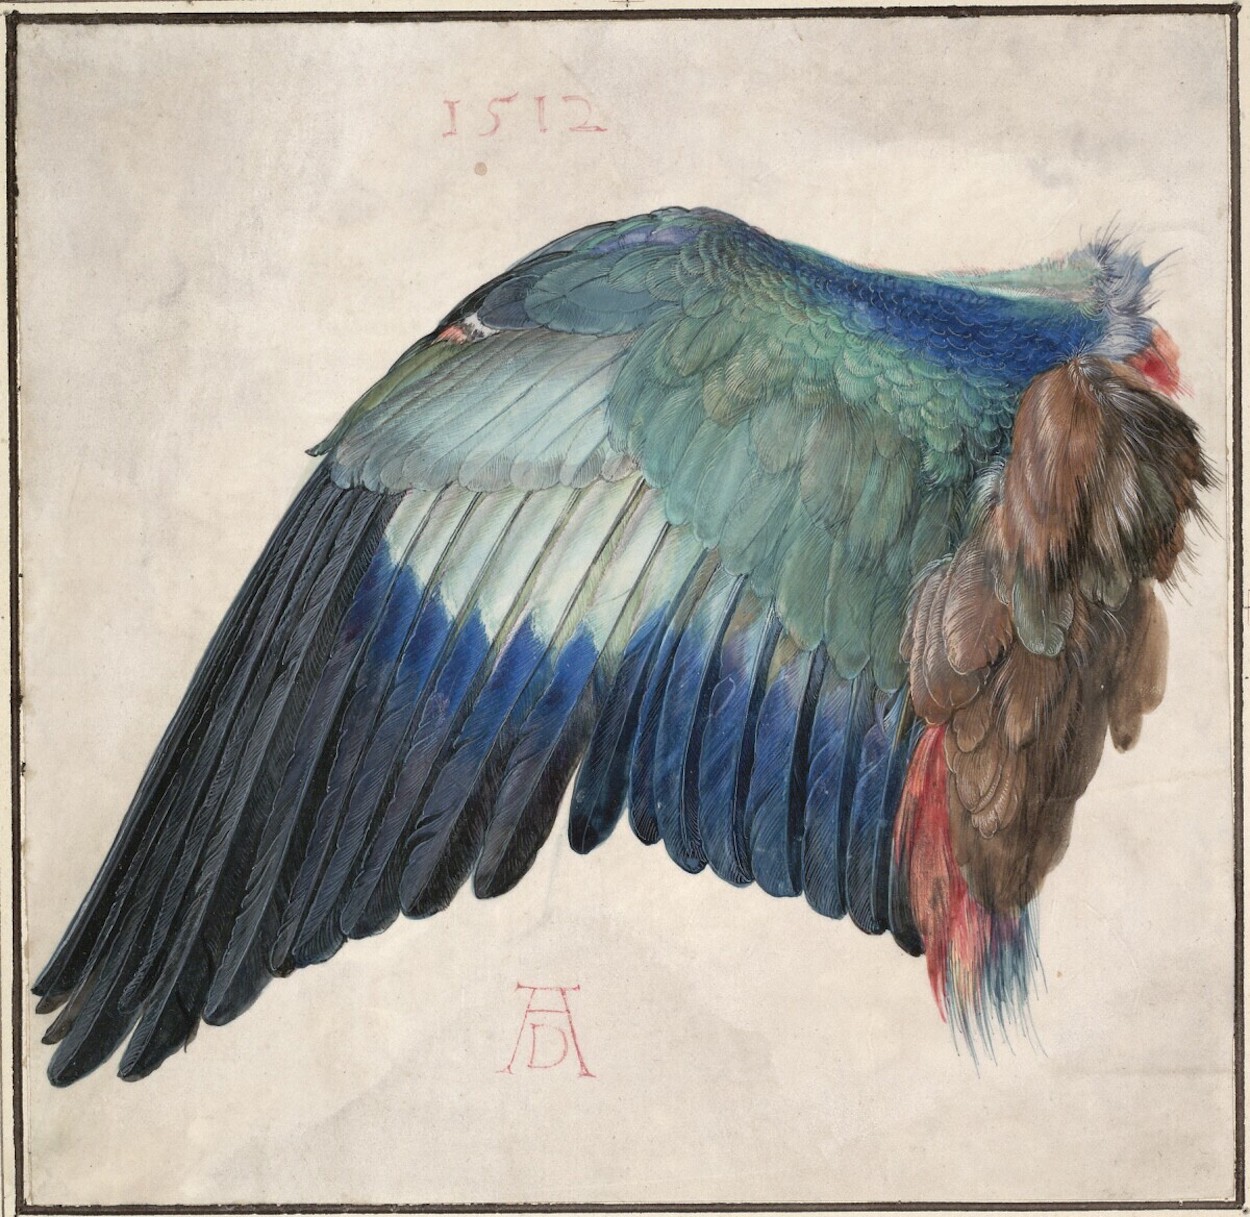 유럽 파랑새의 날개 (Wing of a European Roller) by Albrecht Dürer - 1500/1512 - 19.6 x 20 cm 